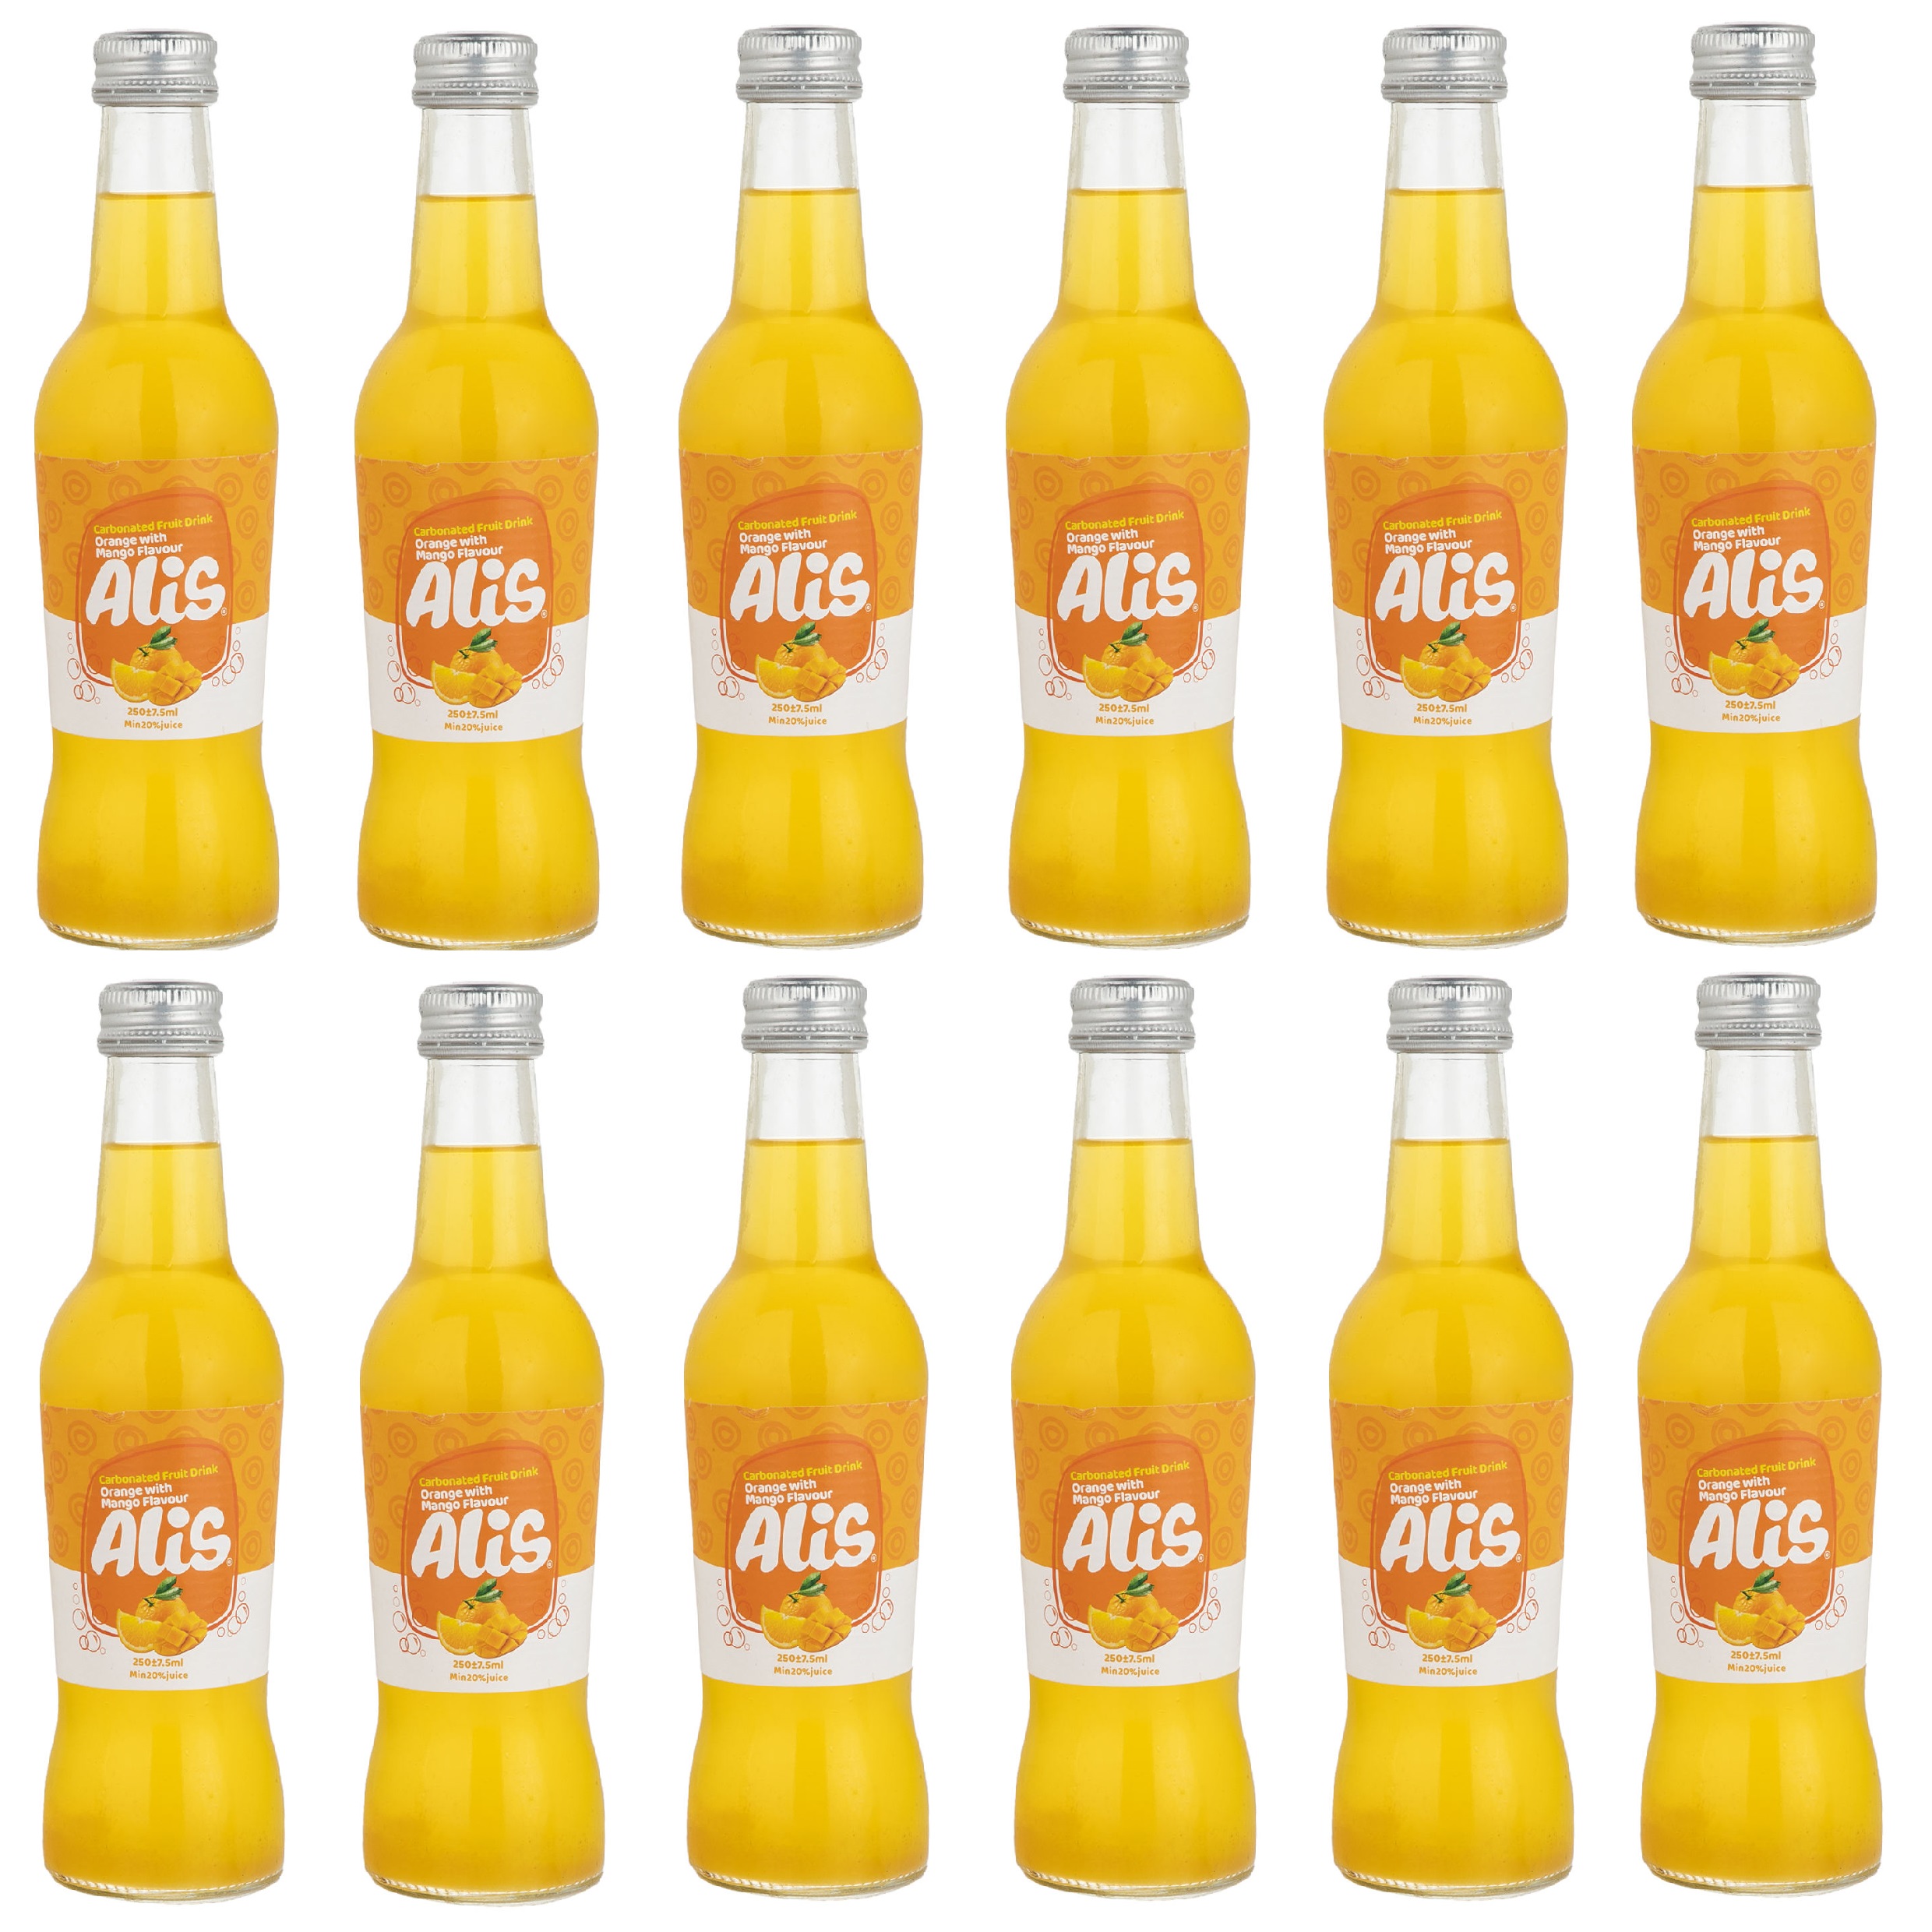 نوشیدنی میوه ای گازدار عالیس با طعم پرتقال و انبه - 250 میلی لیتر بسته 12 عددی